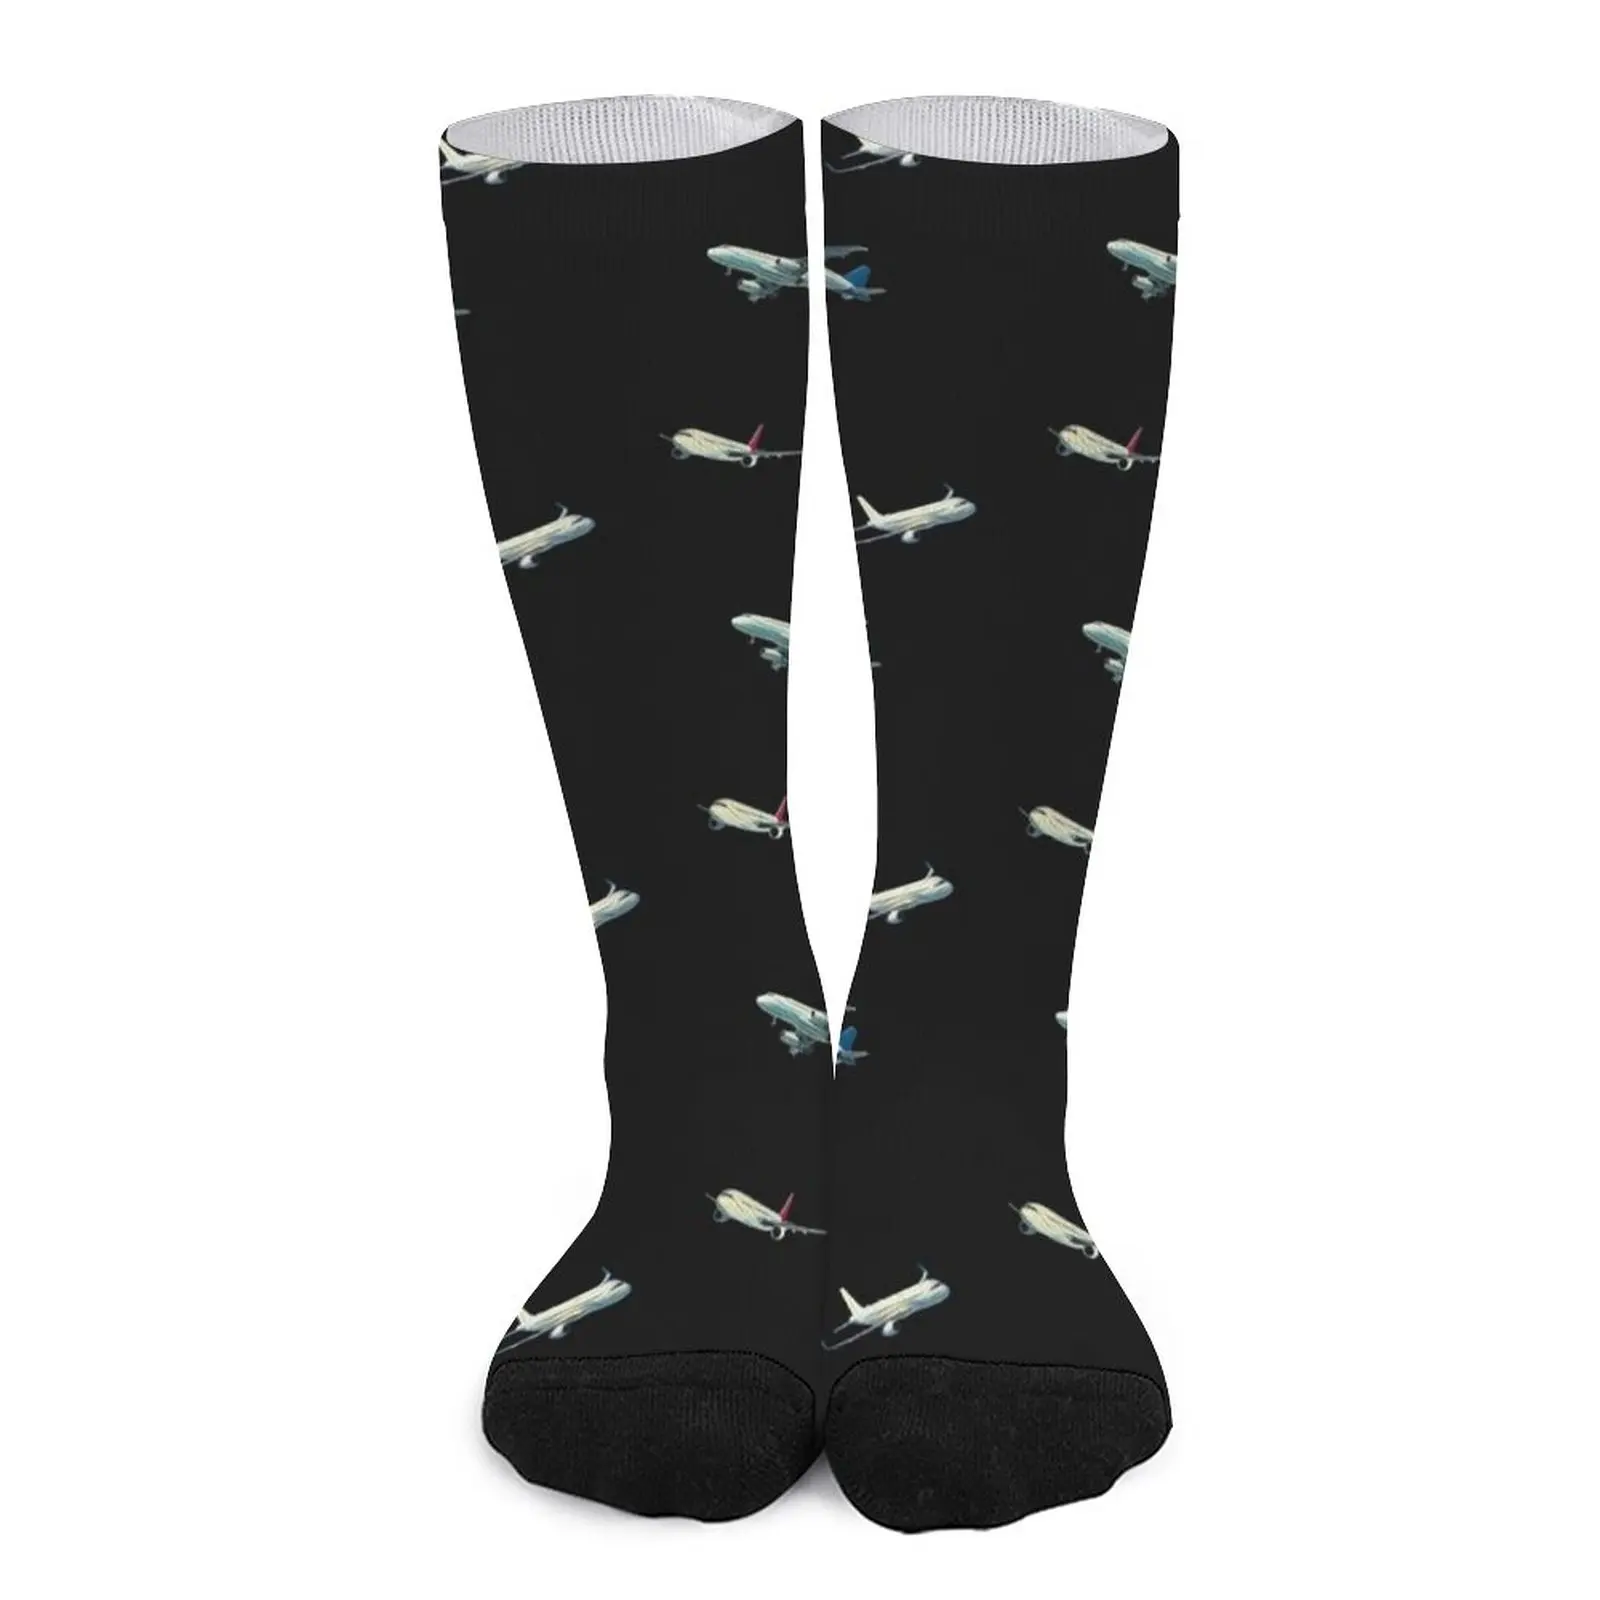 Airplane Pattern Socks Socks female socks Men's